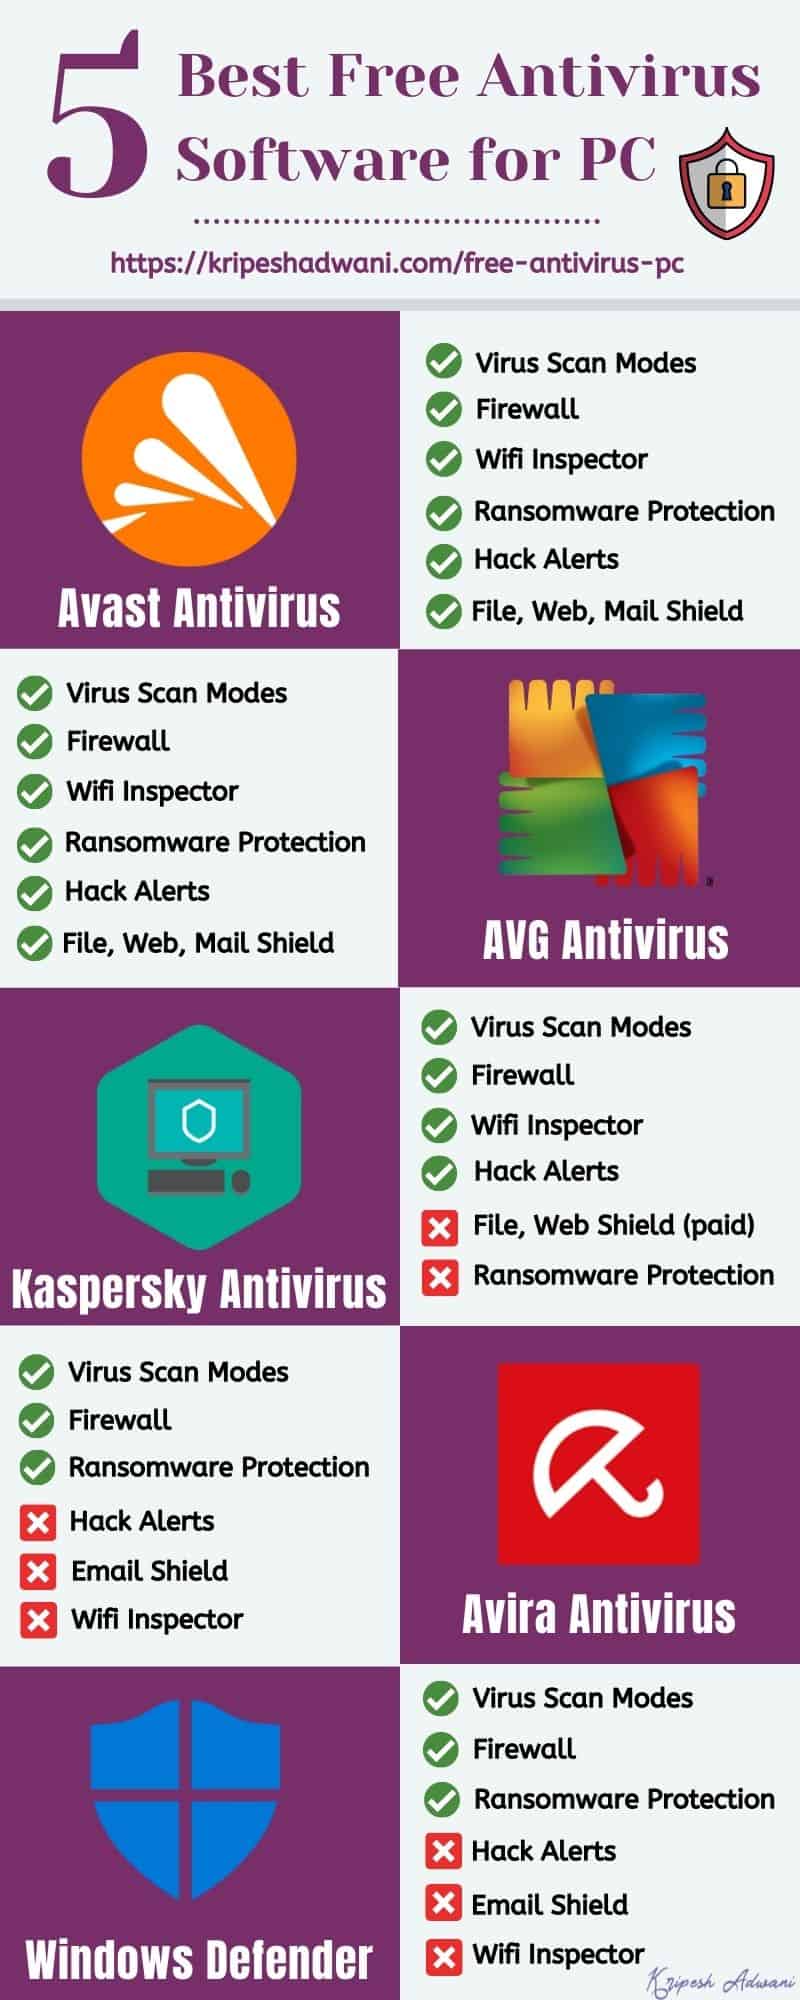 Avira Free Antivirus: Download free virus protection